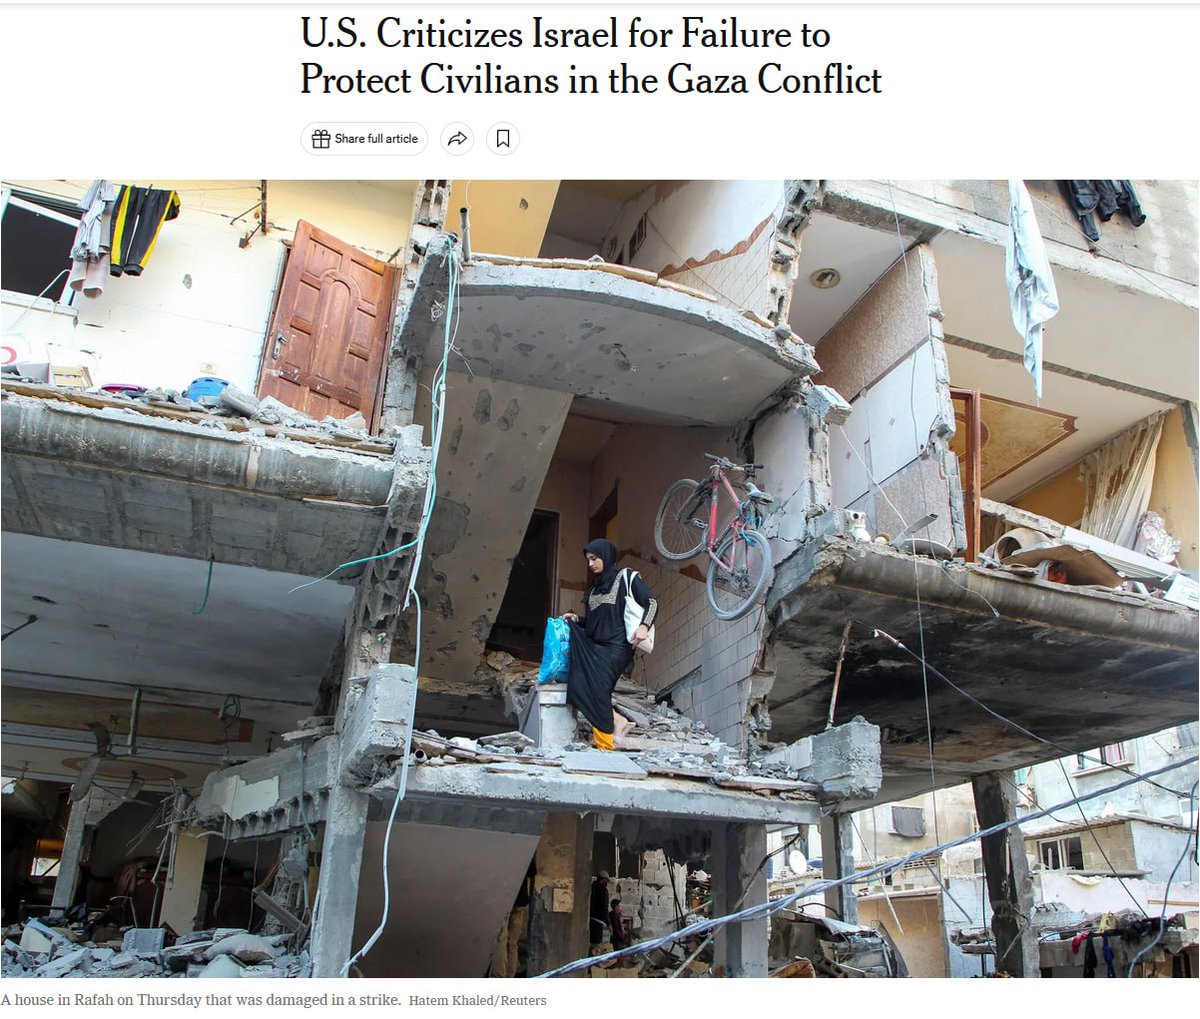 #11maggio Mettete a confronto i paroloni dei presunti esperti con questa immagine di una donna sulle scale di un palazzo sventrato dalle bombe. Dov'è la verità della guerra? Intanto persino gli USA dicono che civili a Gaza non sono protetti, violati diritti umani. Fino a quando?